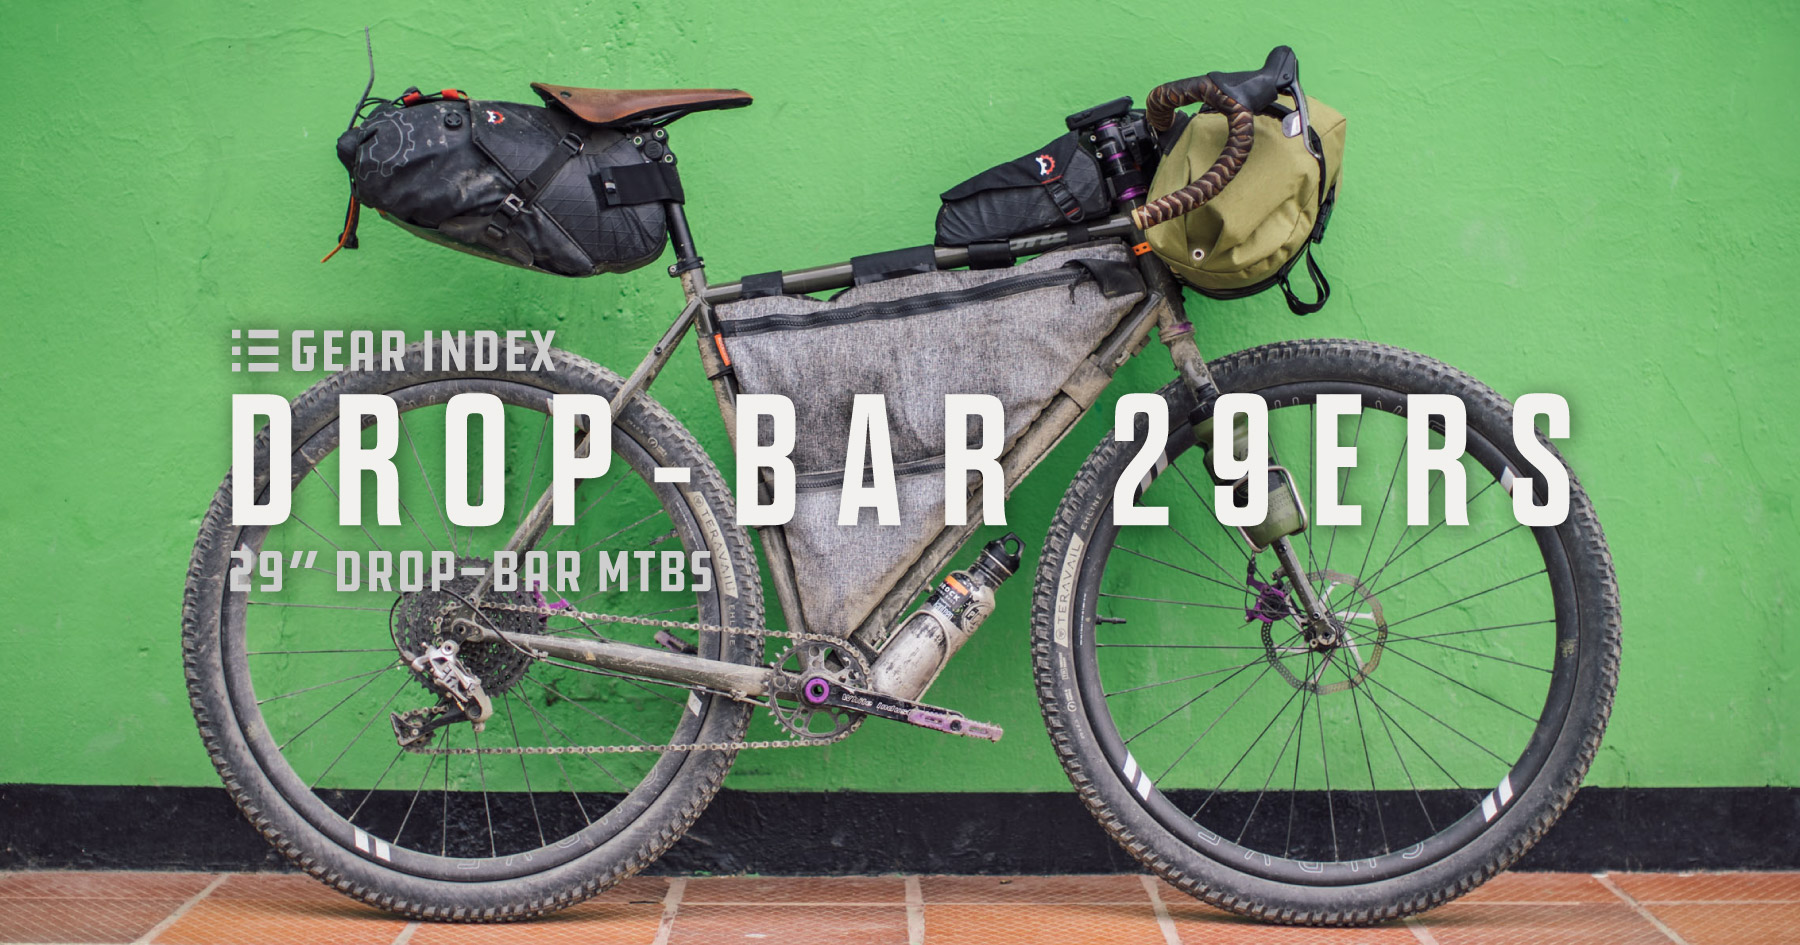 Drop-bar-29ers, 29" Drop-bar mountain bikes